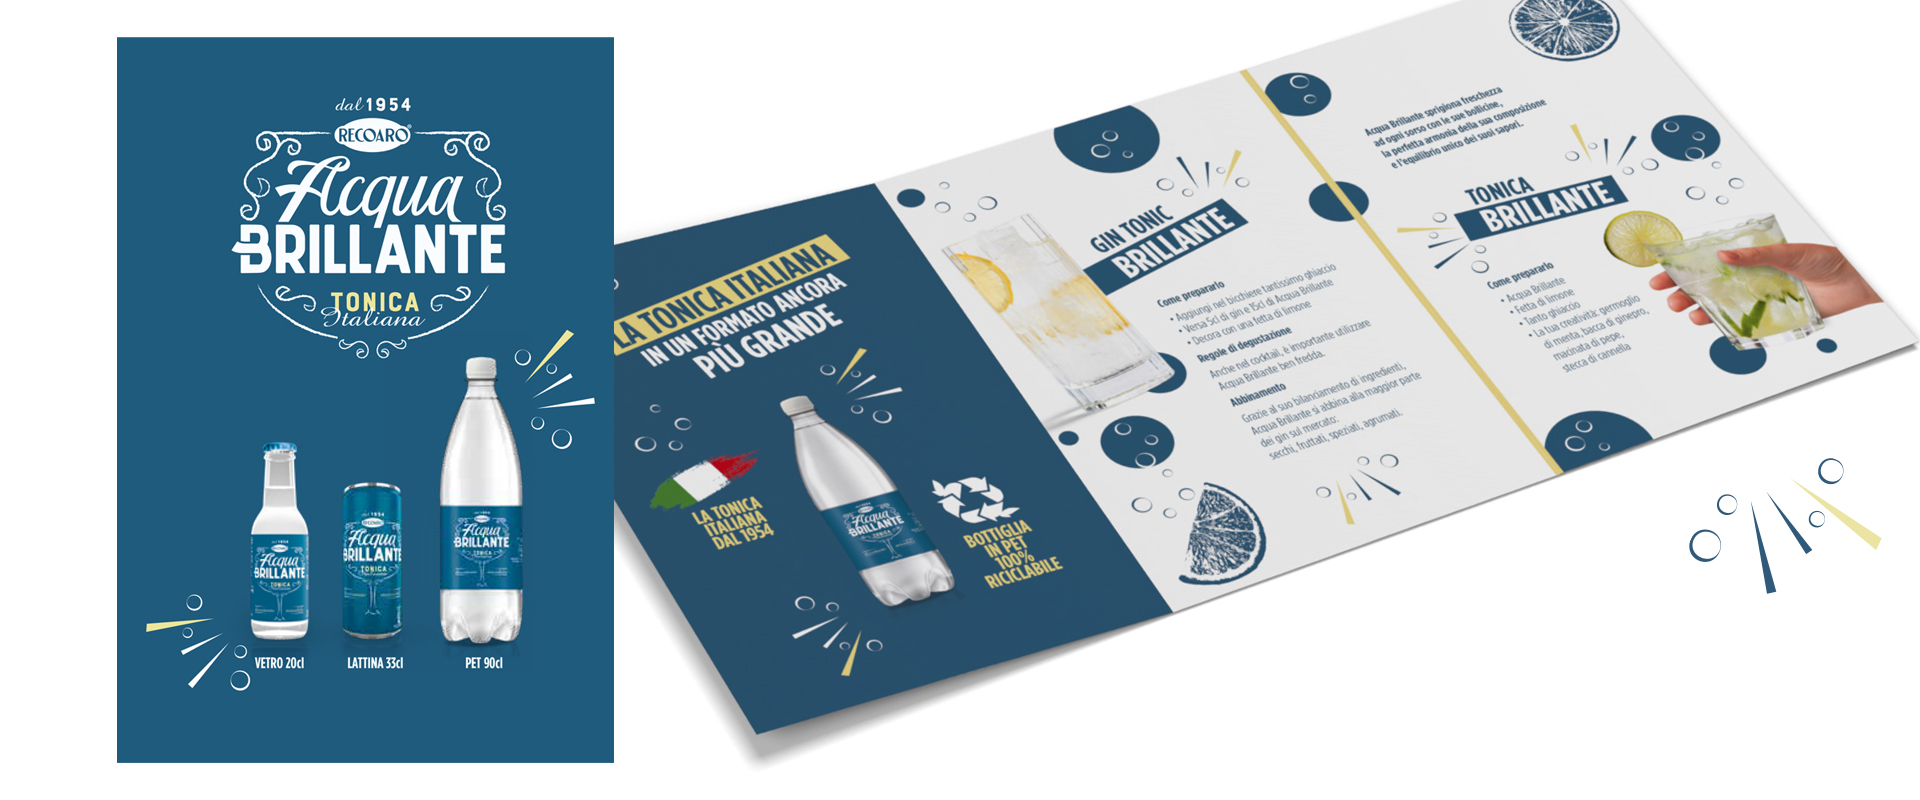 Il leaflet consumer realizzato da ATC per comunicare i formati e le occasioni di consumo di Acqua Brillante